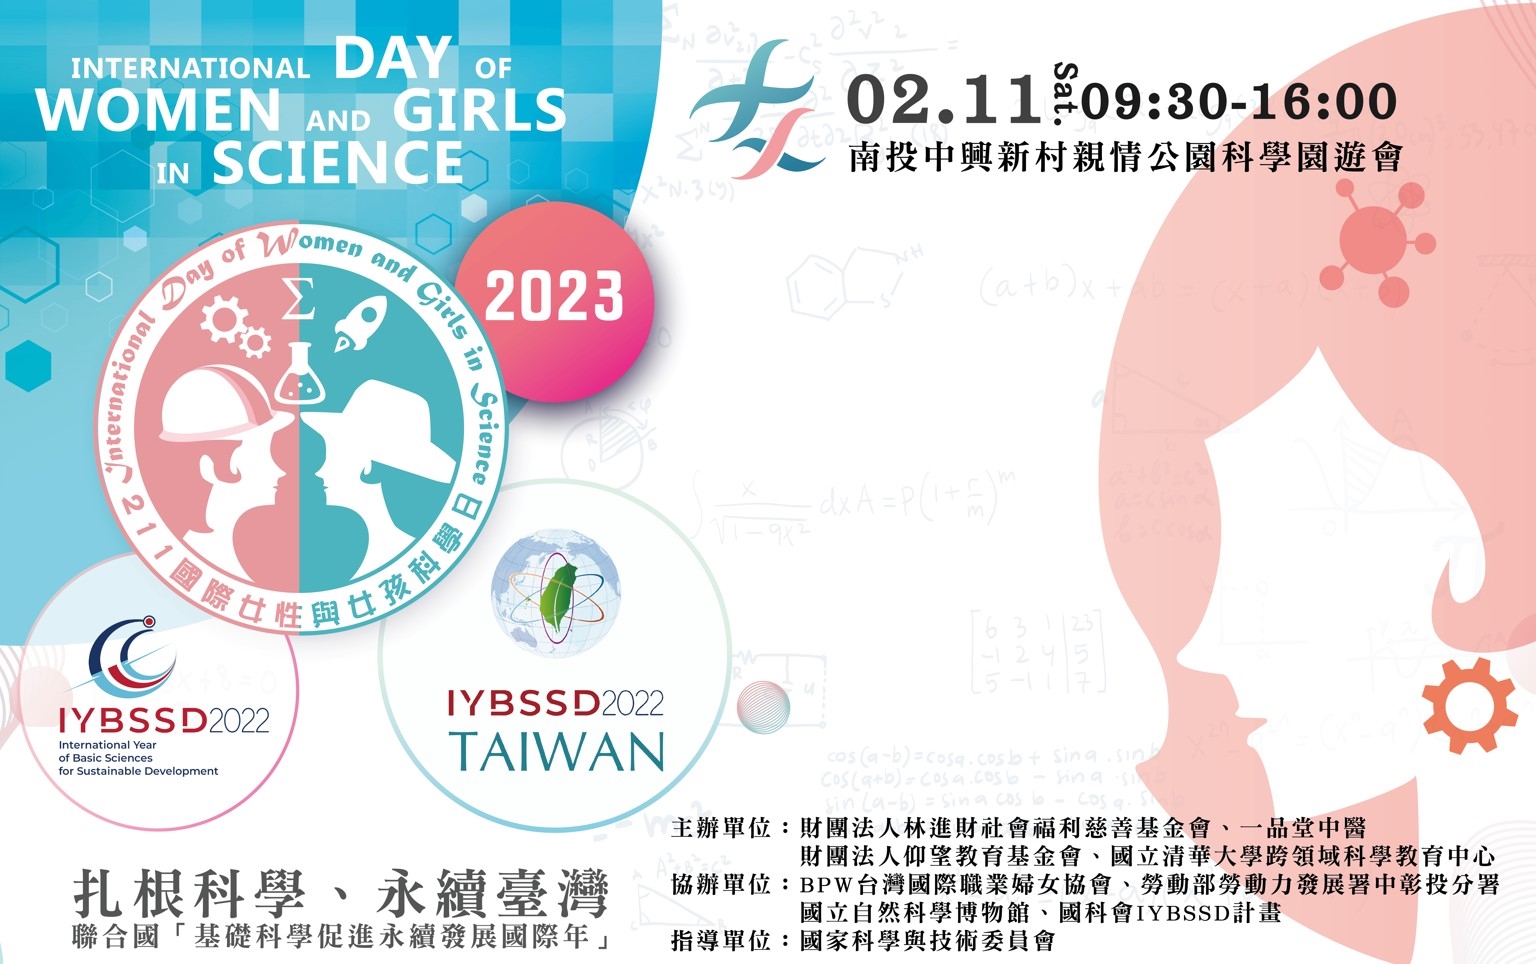 2023國際女性科學日嘉年華會宣傳用圖片/海報